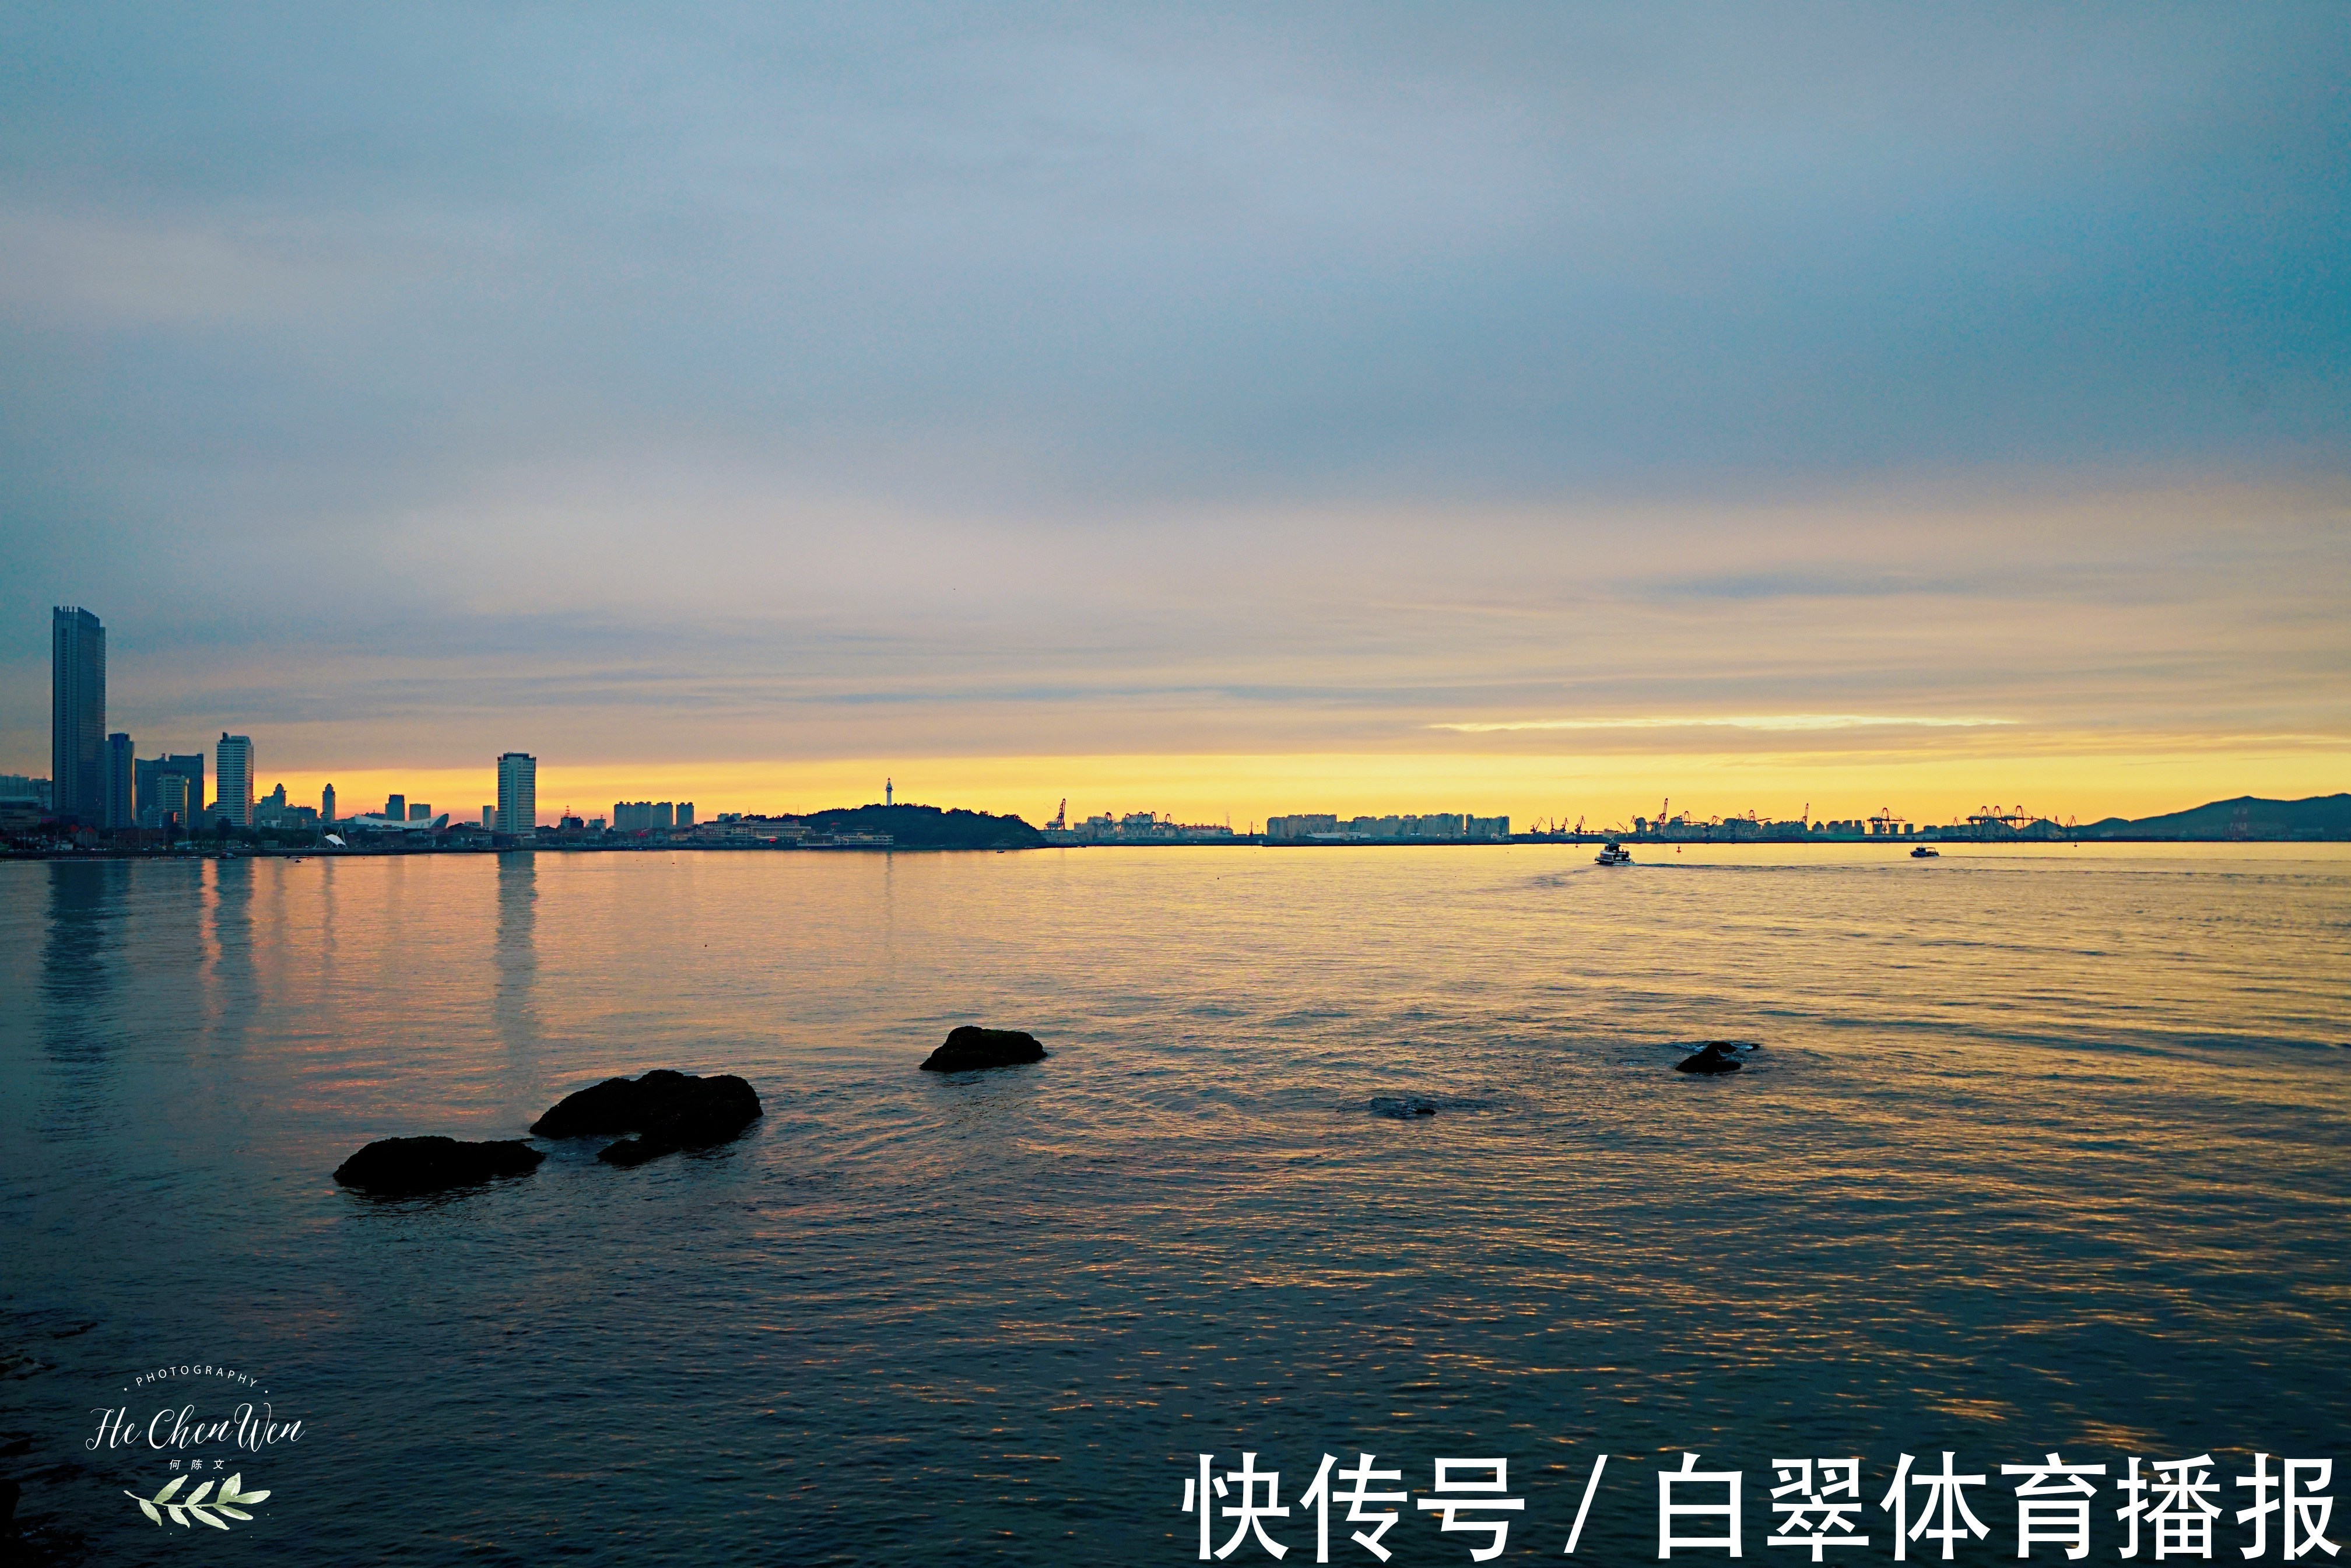 烟台滨海广场,看最美夕阳,不是每个城市都